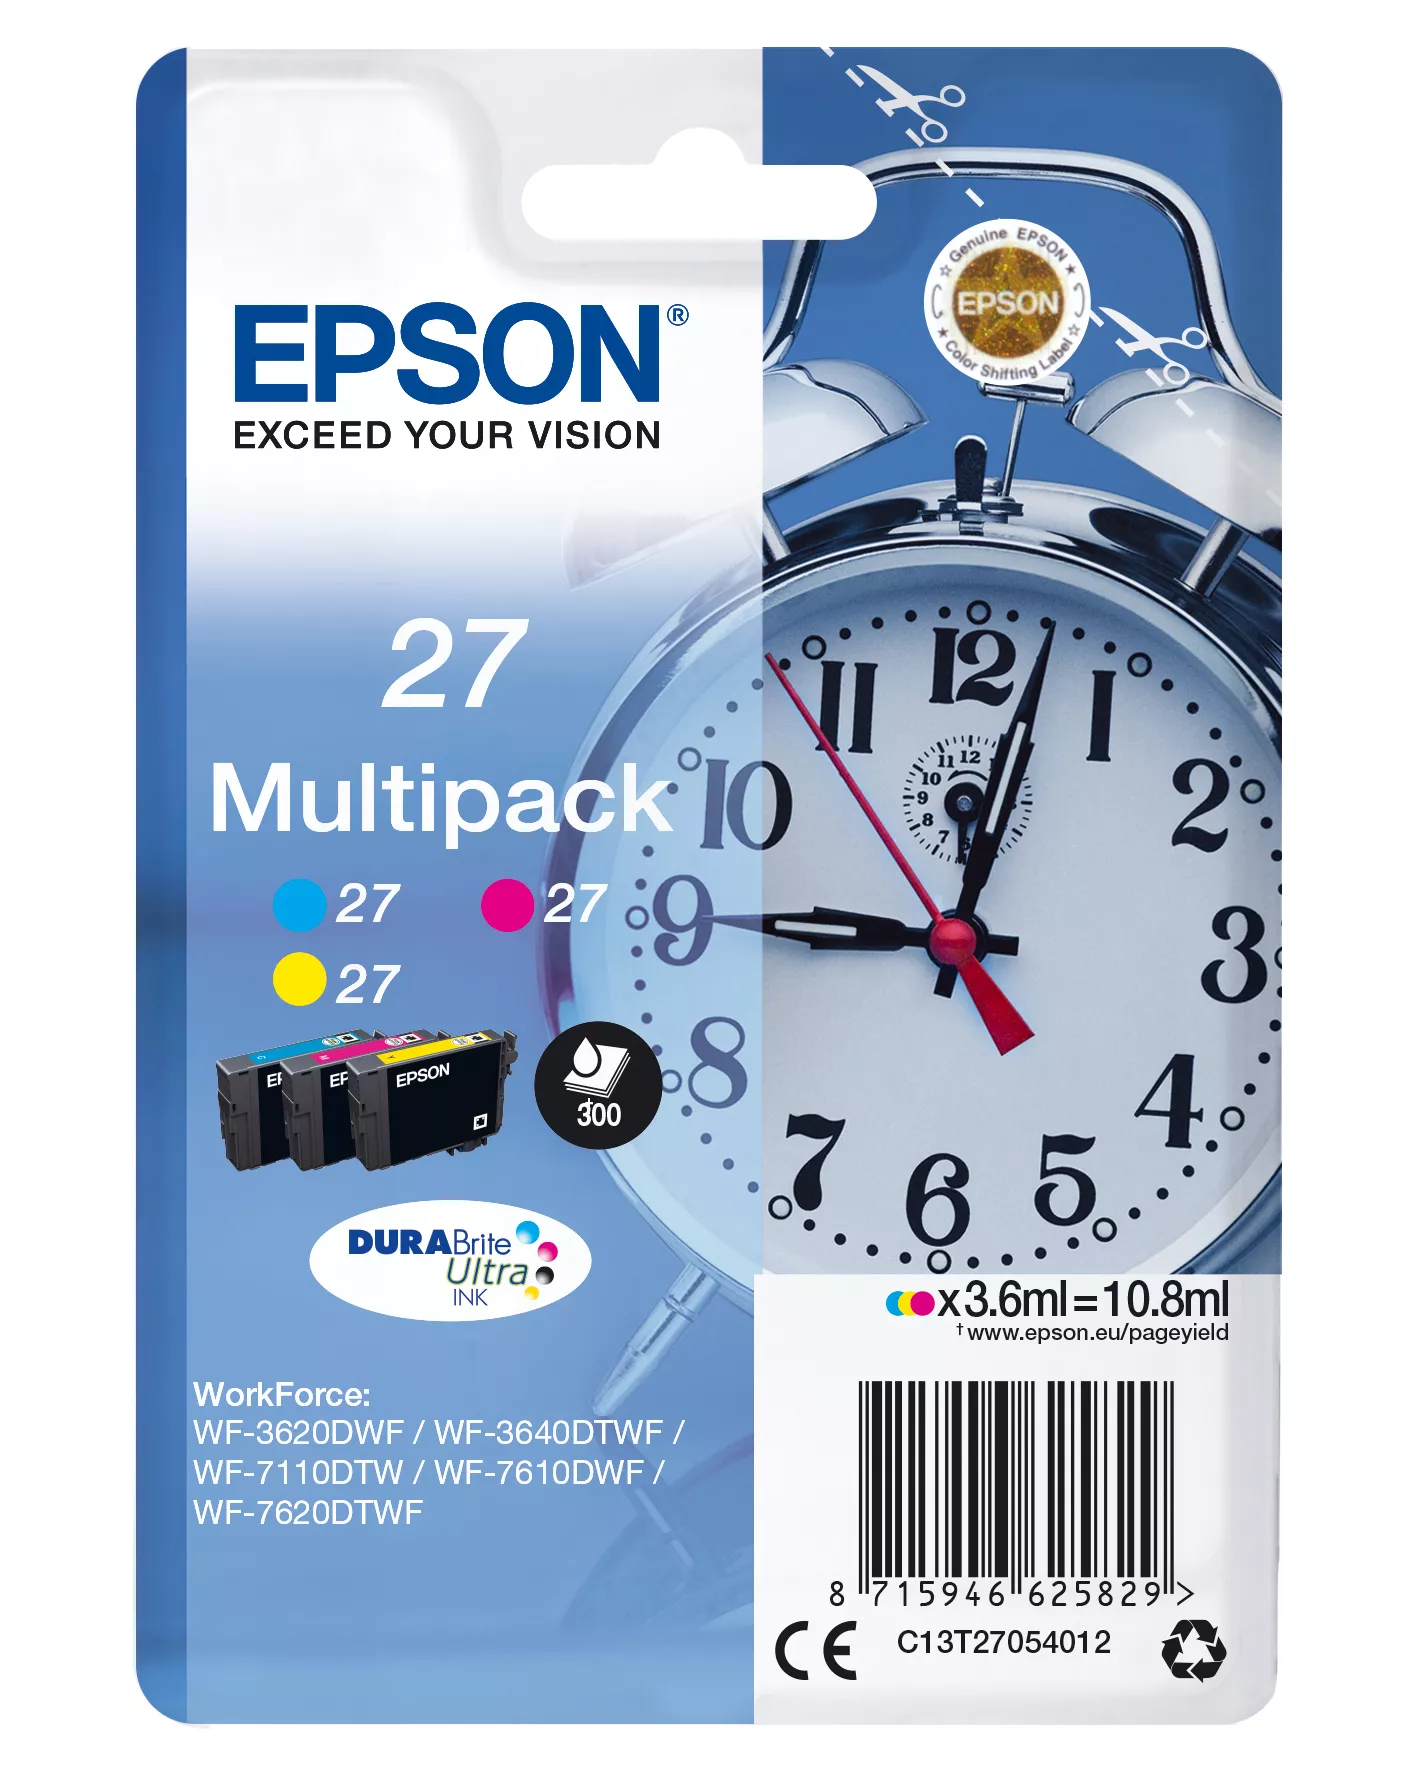 Achat EPSON 27 cartouche dencre cyan, magenta et jaune capacité et autres produits de la marque Epson